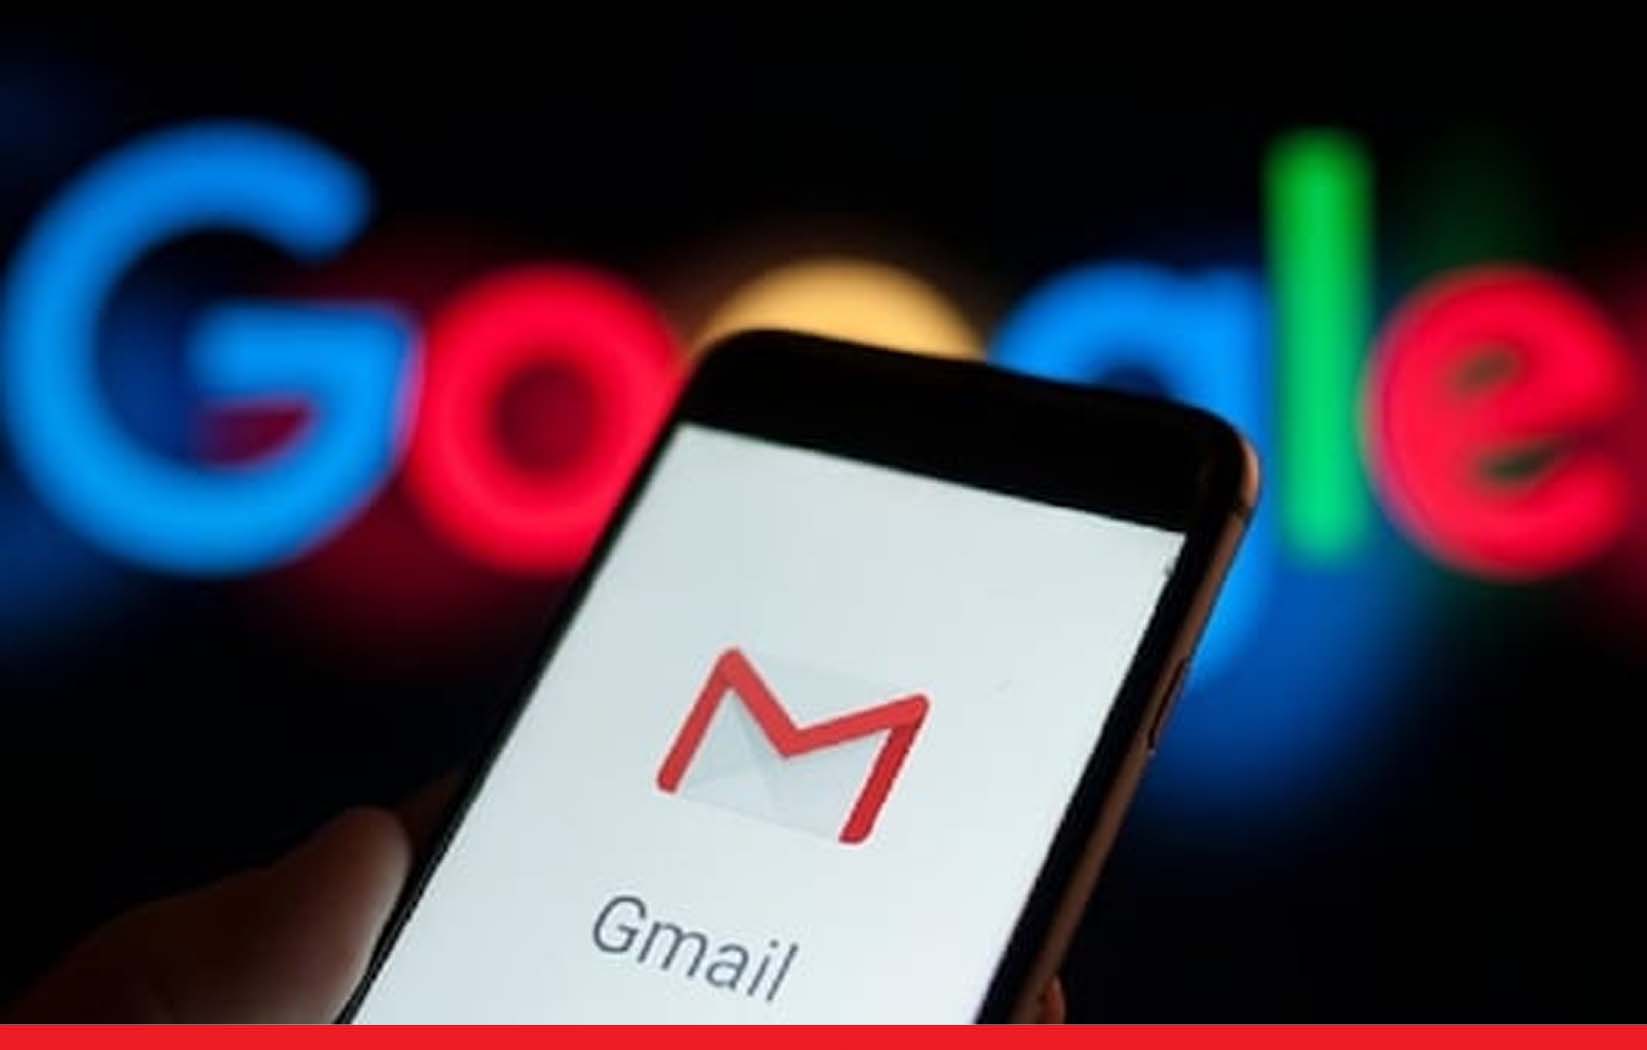 Gmail के नए लुक में मिलेगा चैटिंग, मीटिंग और गूगल स्पेस के ऑप्शन 